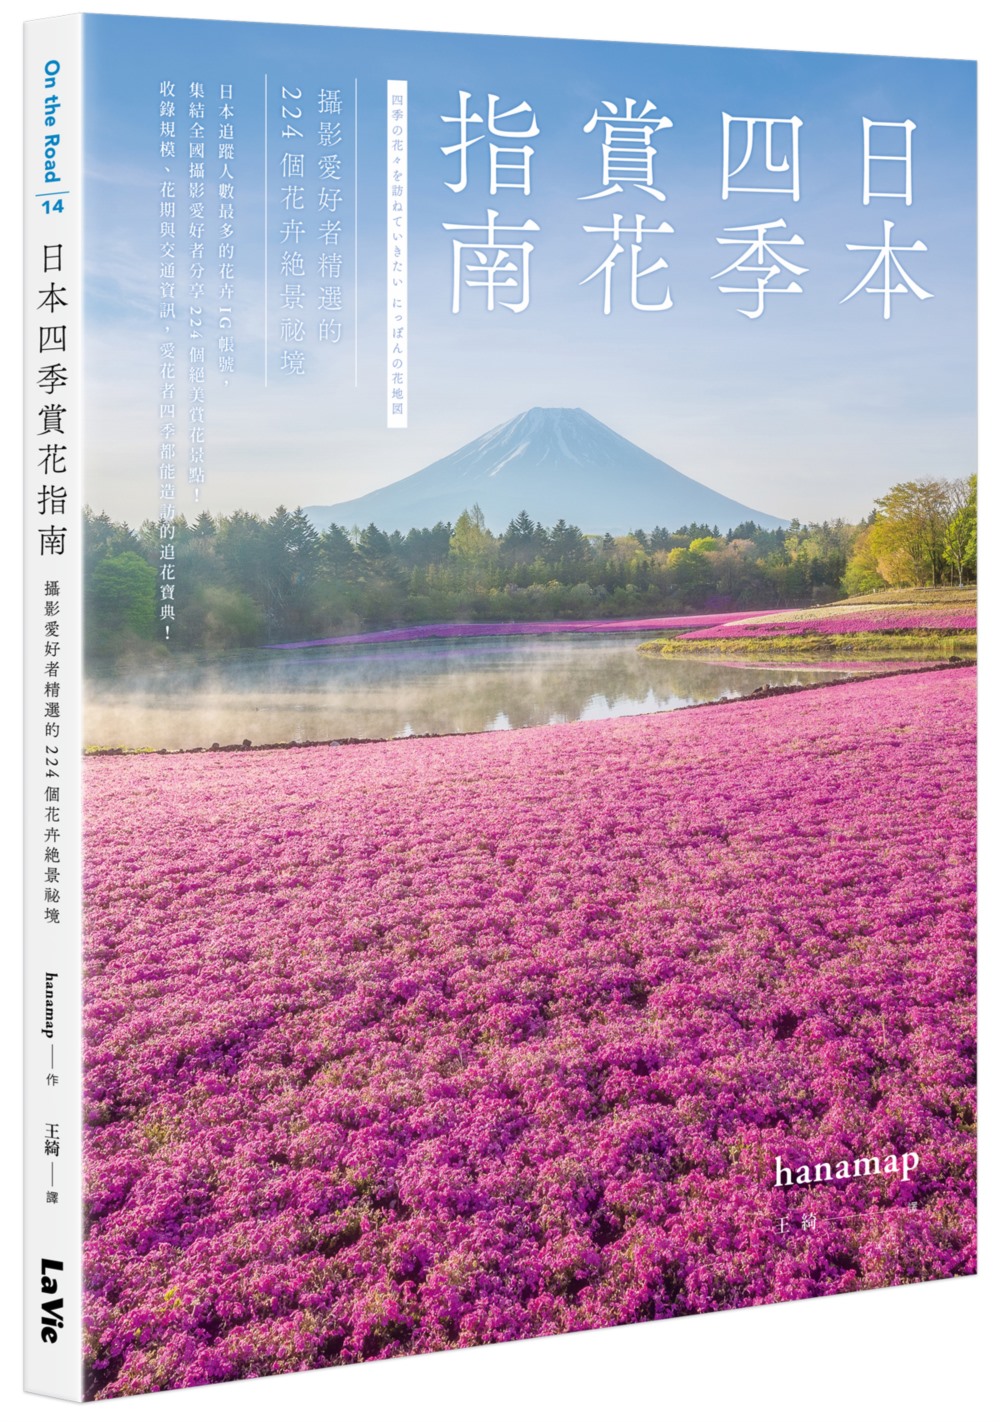 日本四季賞花指南: 攝影愛好者精選的224個花卉絕景秘境